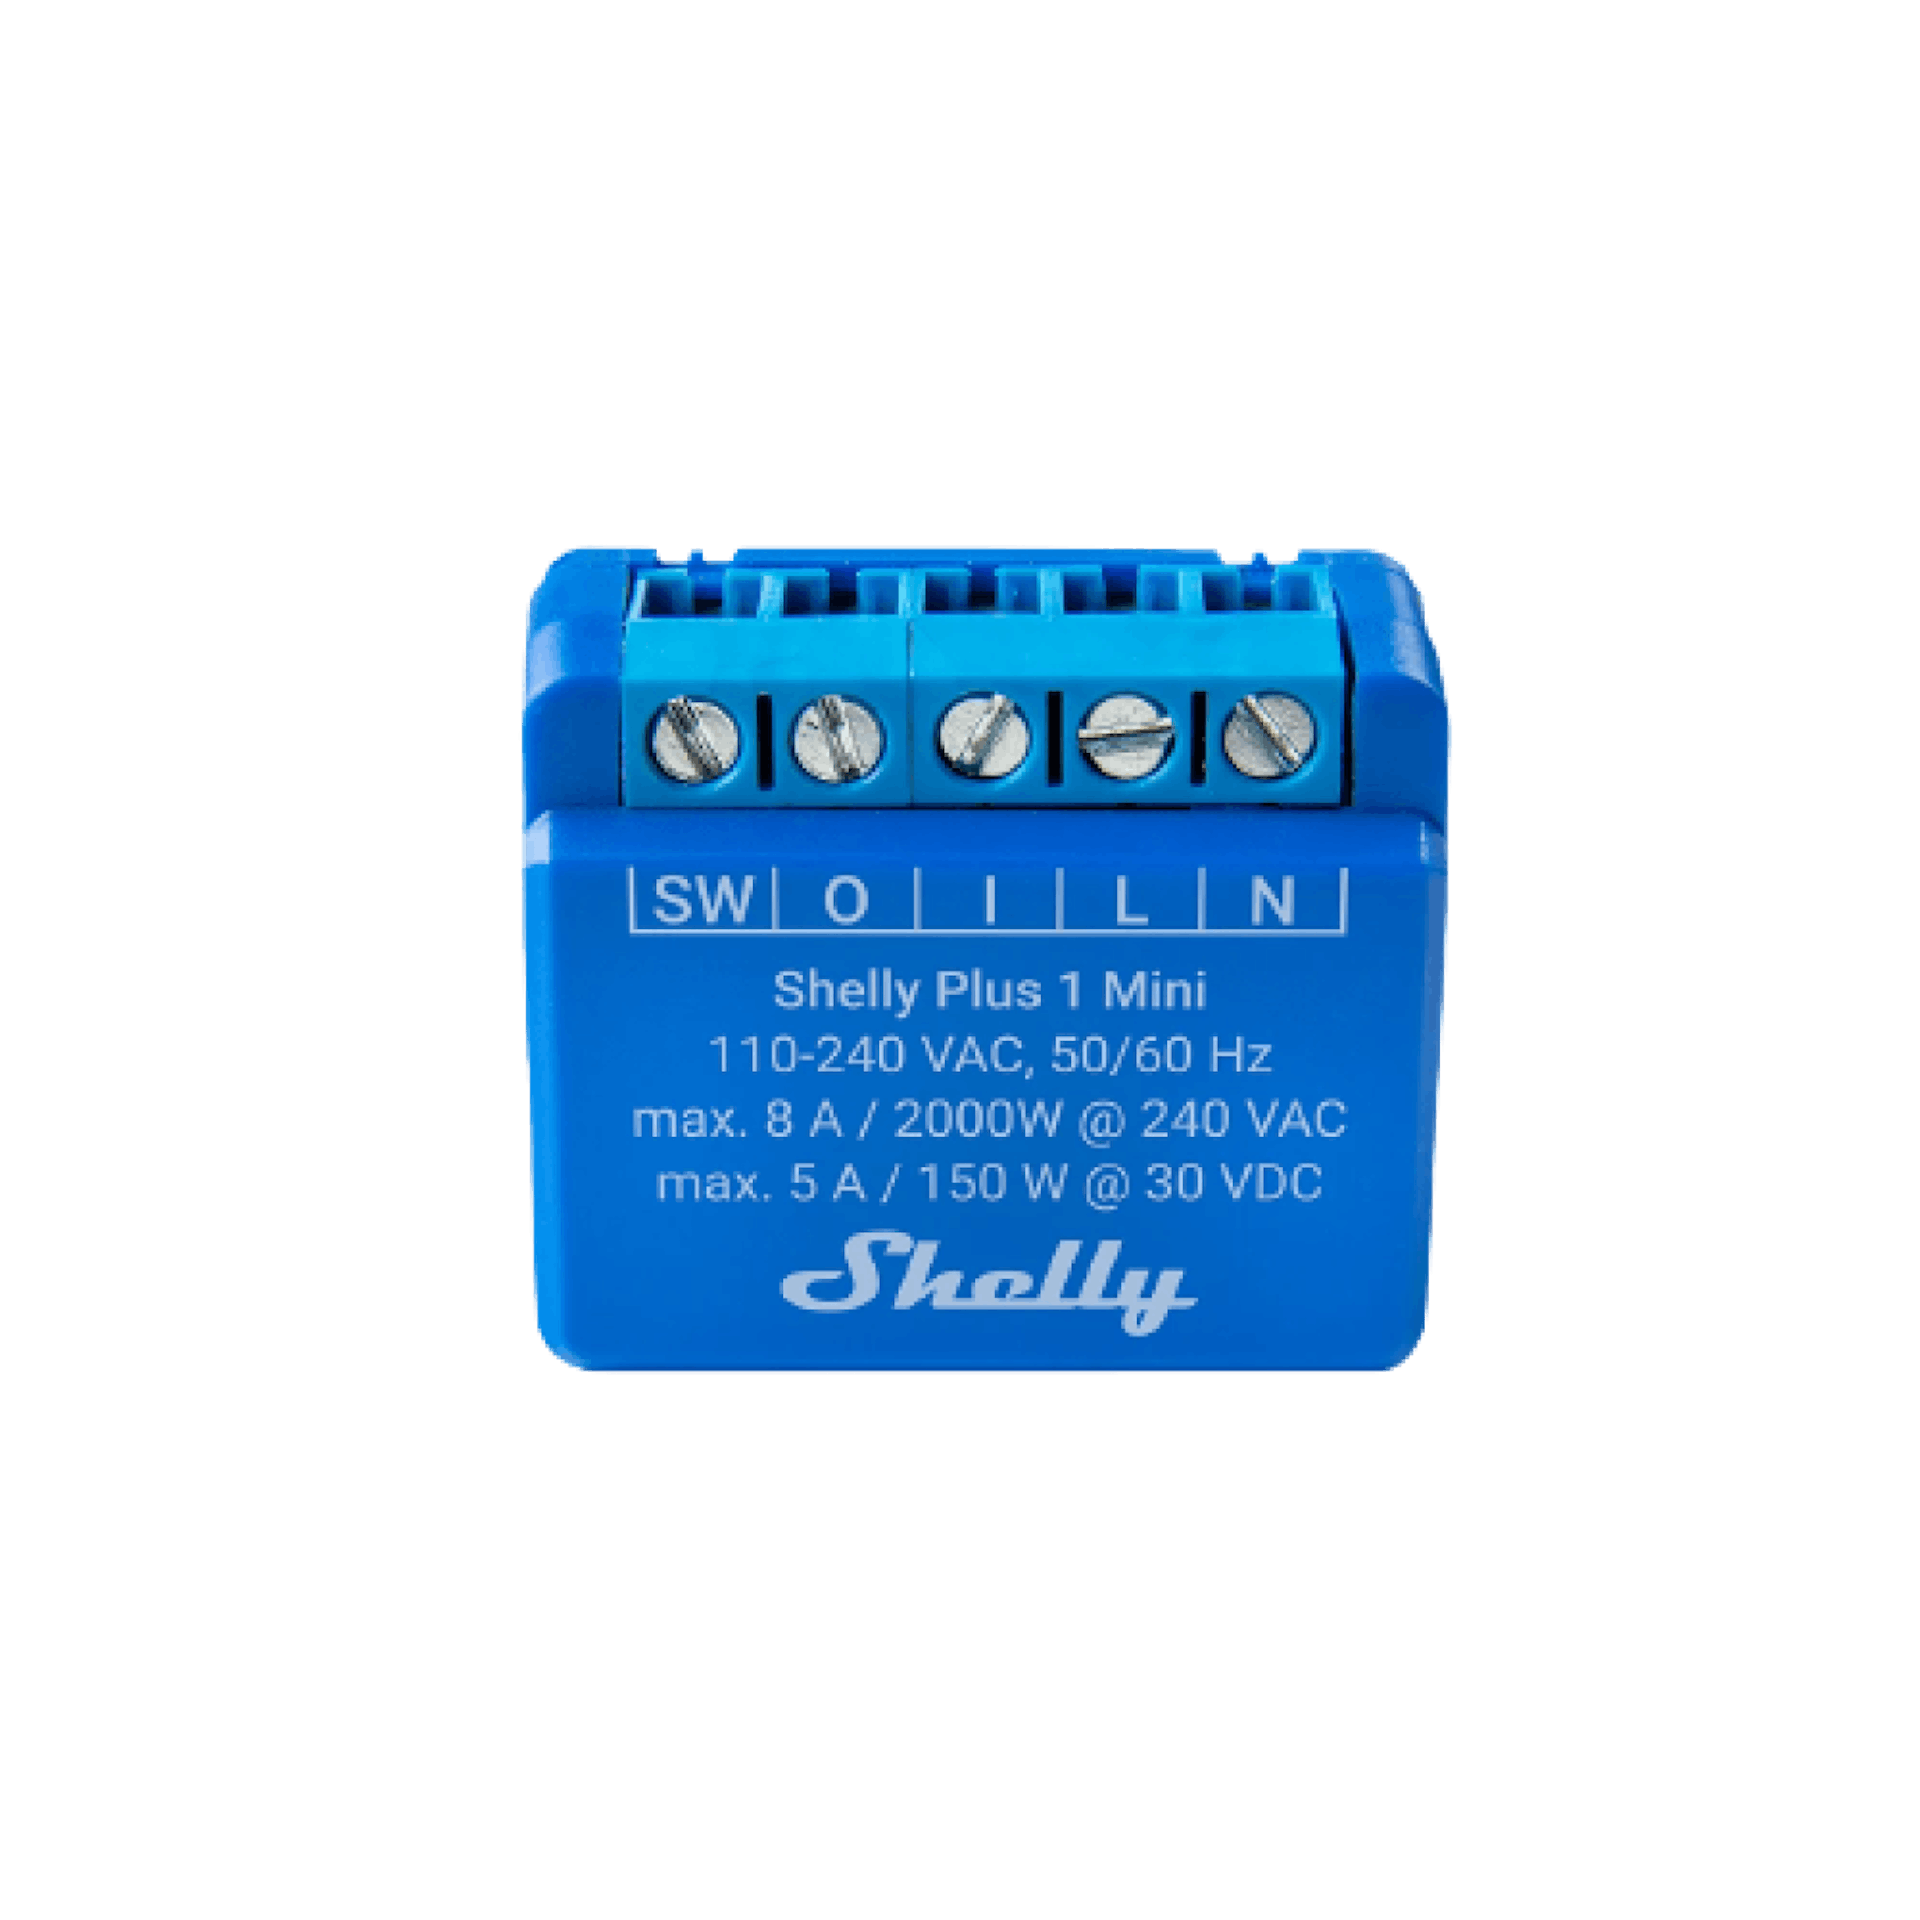 Shelly Plus 1 Mini (Gen3)